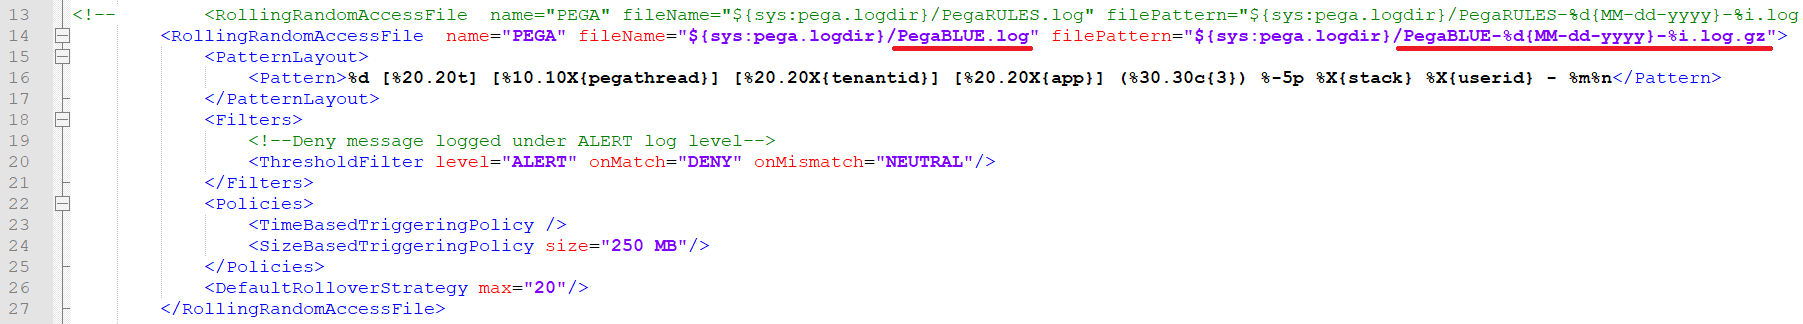 File name change in prlog4j2.xml